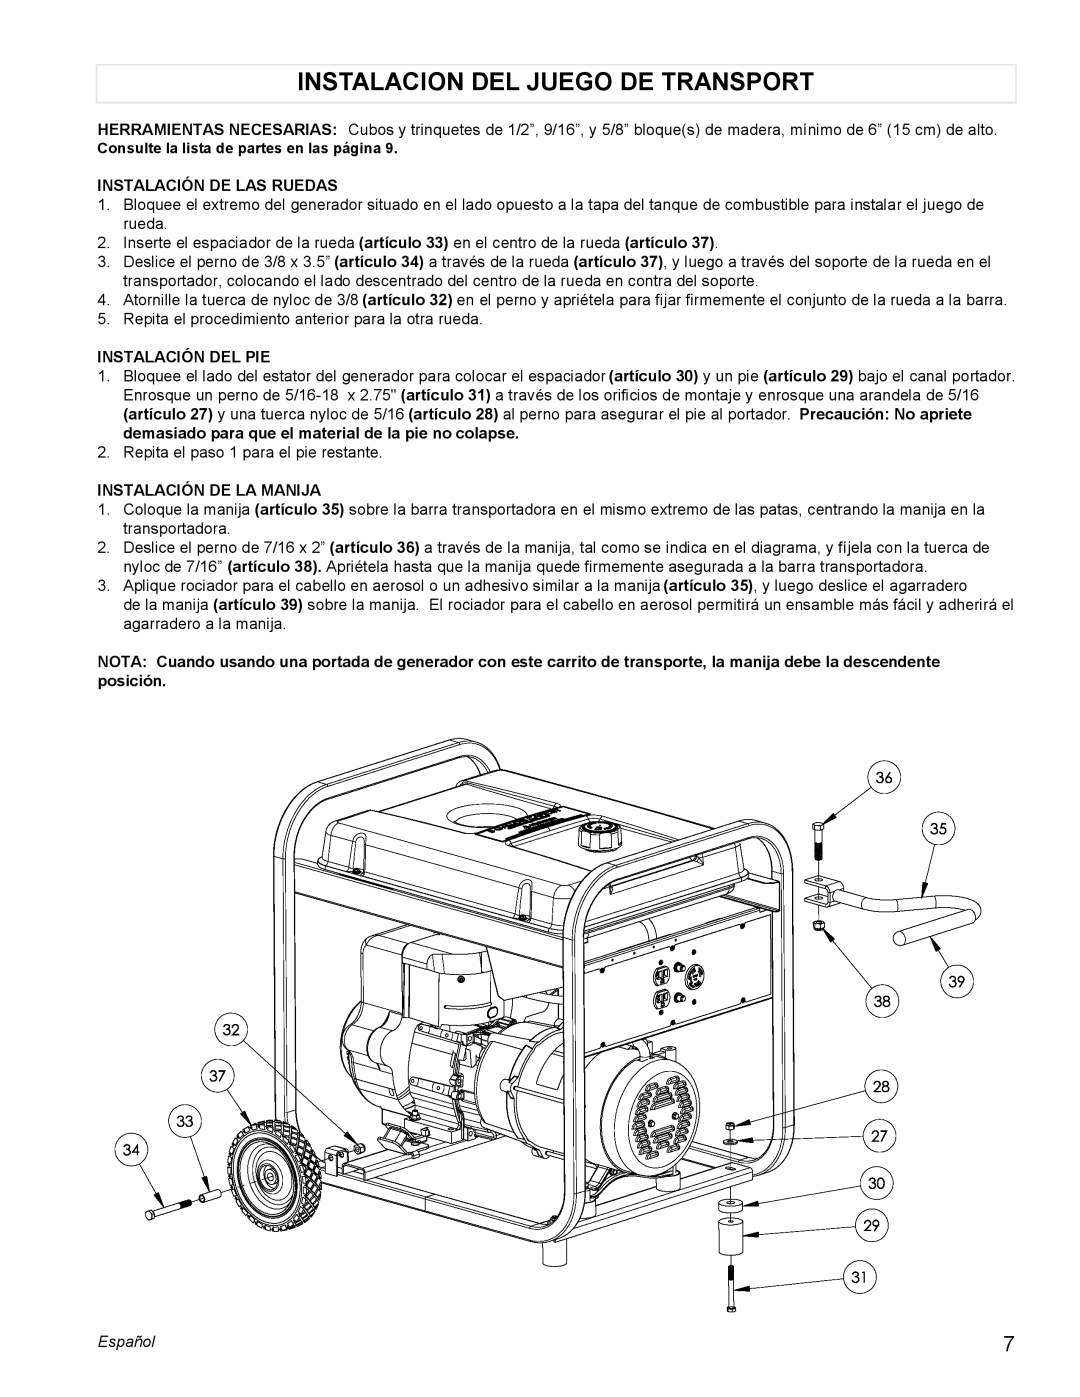 Powermate PM0525303.01 manual Instalacion Del Juego De Transport, Instalación De Las Ruedas, Instalación Del Pie, Español 